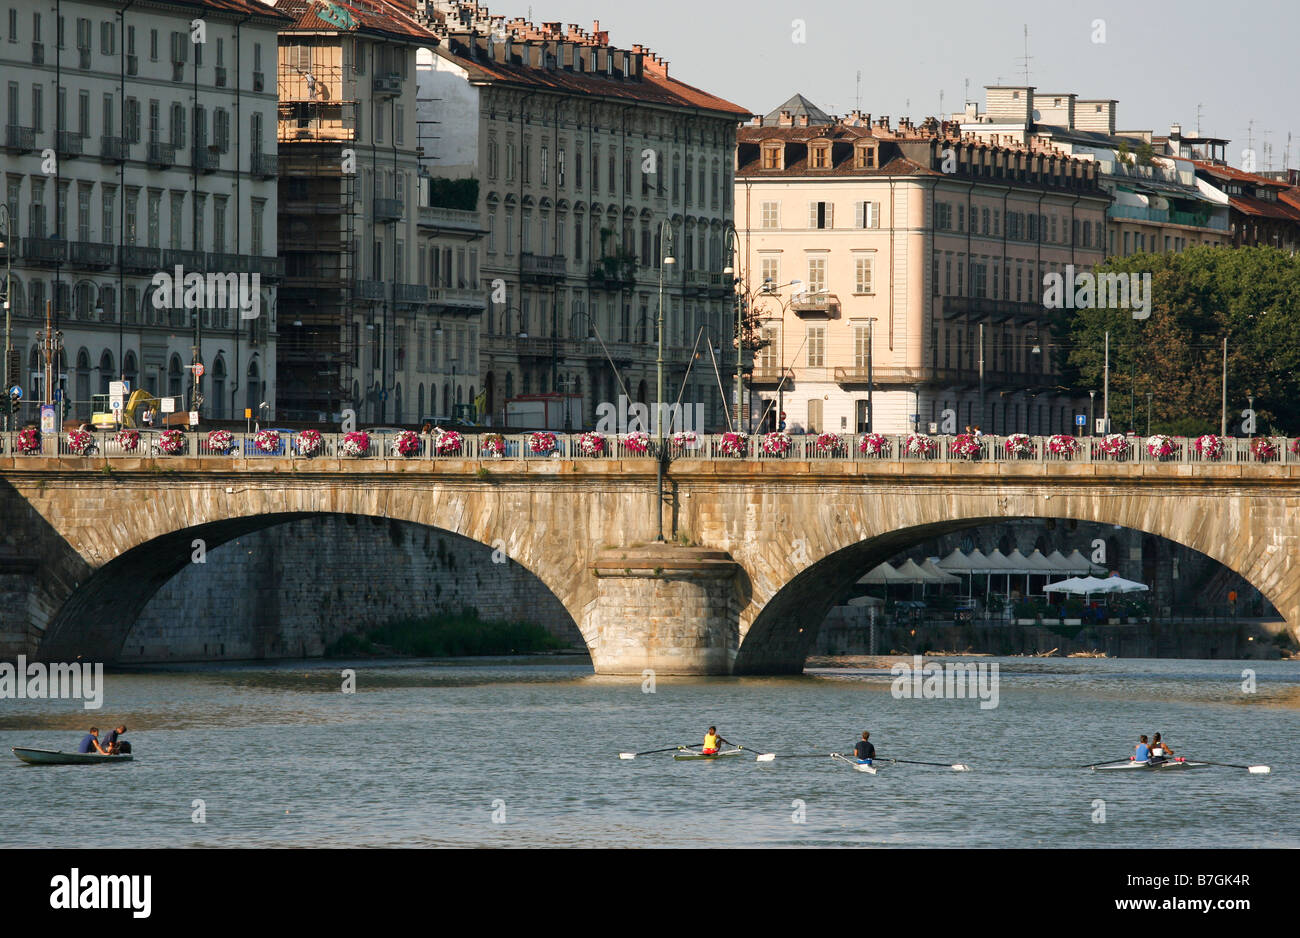 Fiume Po, Bridge, l'arco del ponte, canoe, palazzi, Torino, Italia, Piemonte Foto Stock